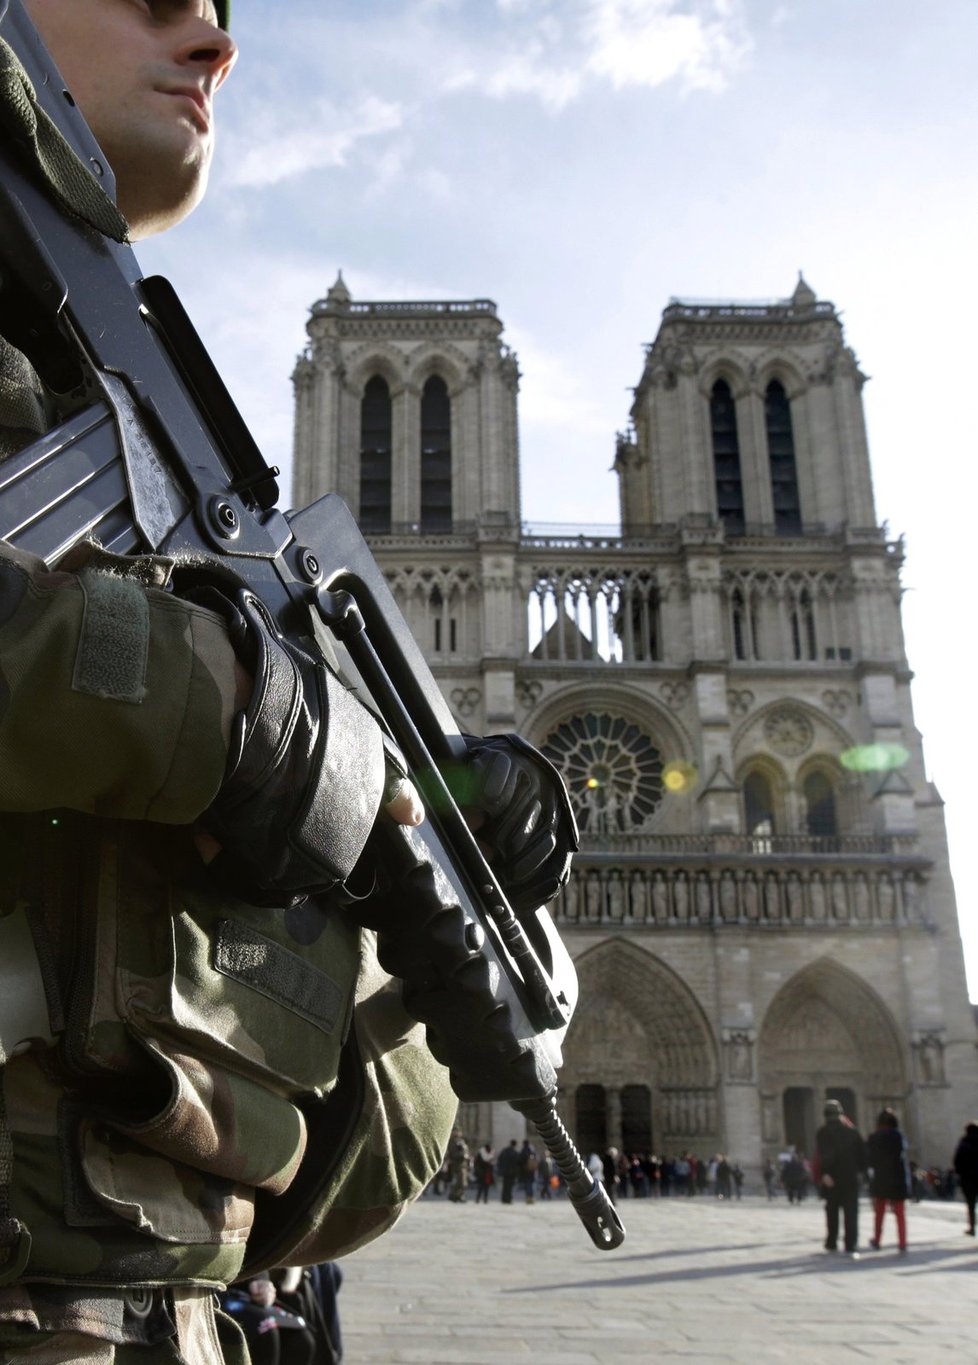 Tak trochu jiné Vánoce. Paříž hlídají desítky policistů a vojáků v důsledku teroristických útoků